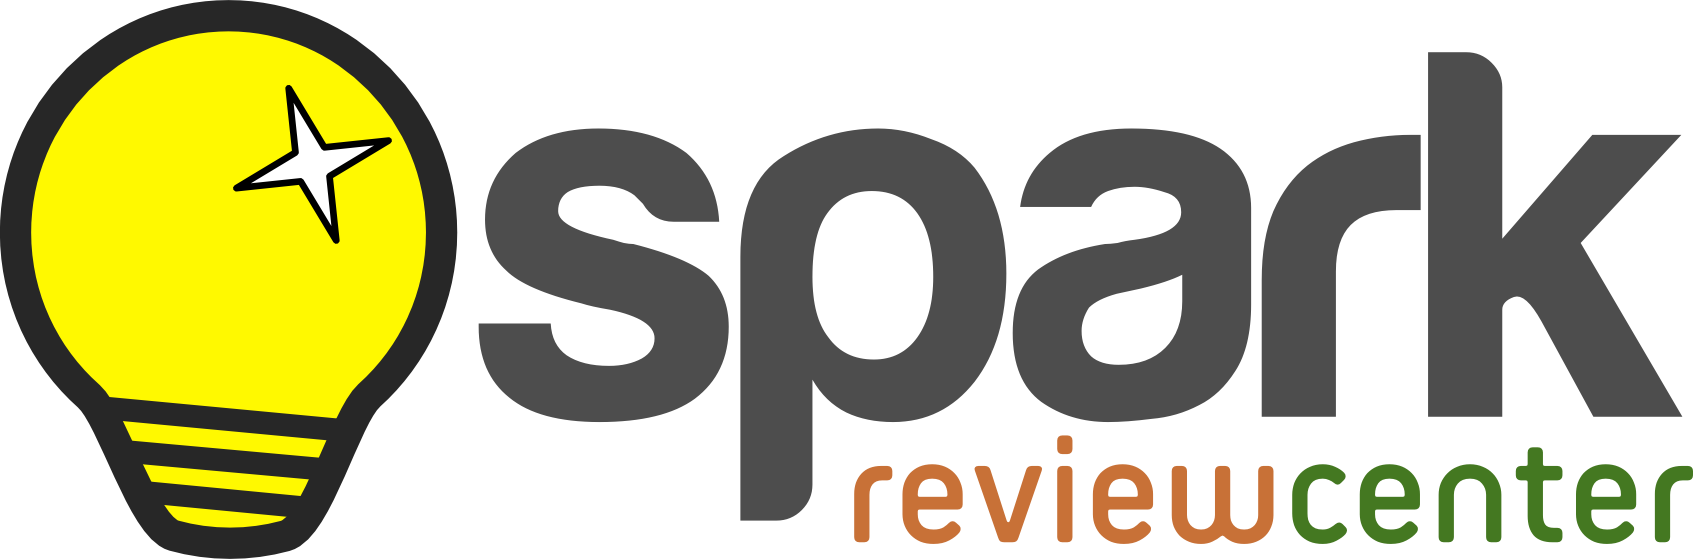 spark-logo-600dpi